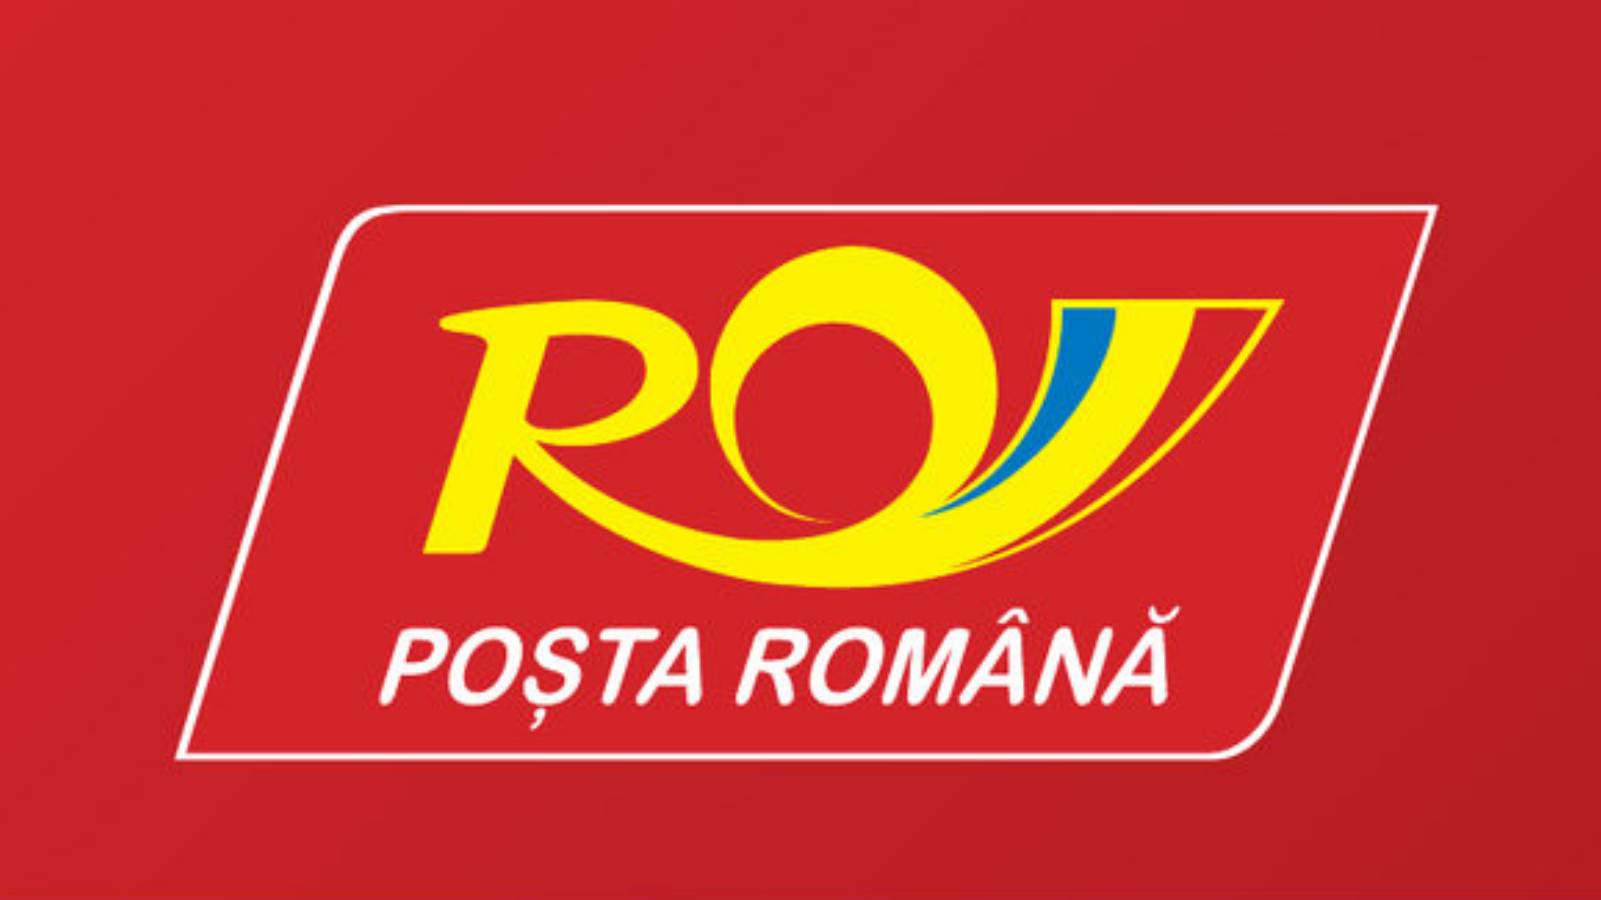 Ufficio postale circondariale di Posta Romana